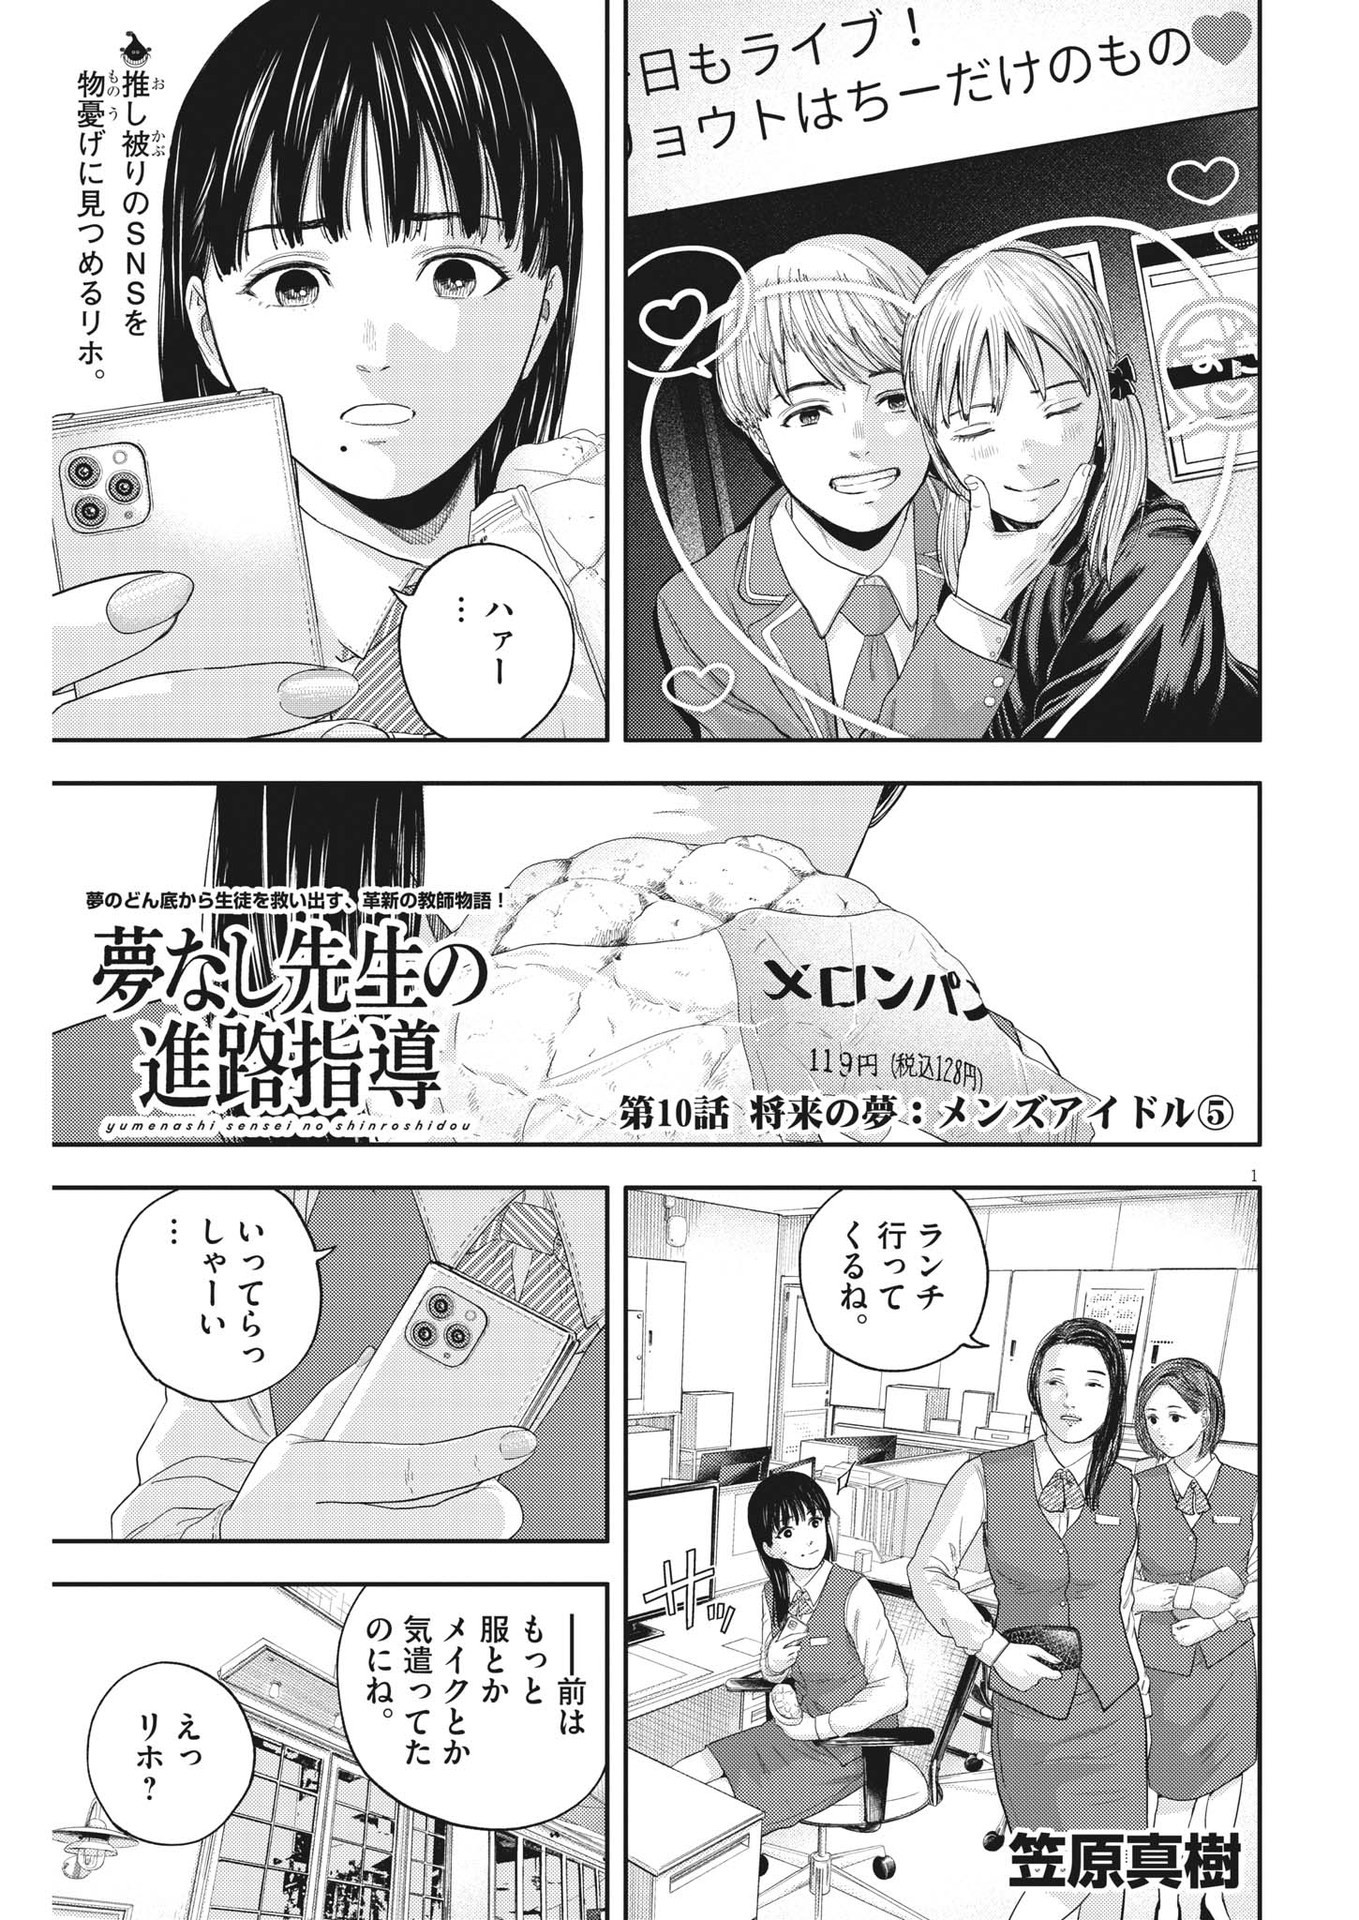 Yumenashi-sensei no Shinroshidou - Chapter 10 - Page 1